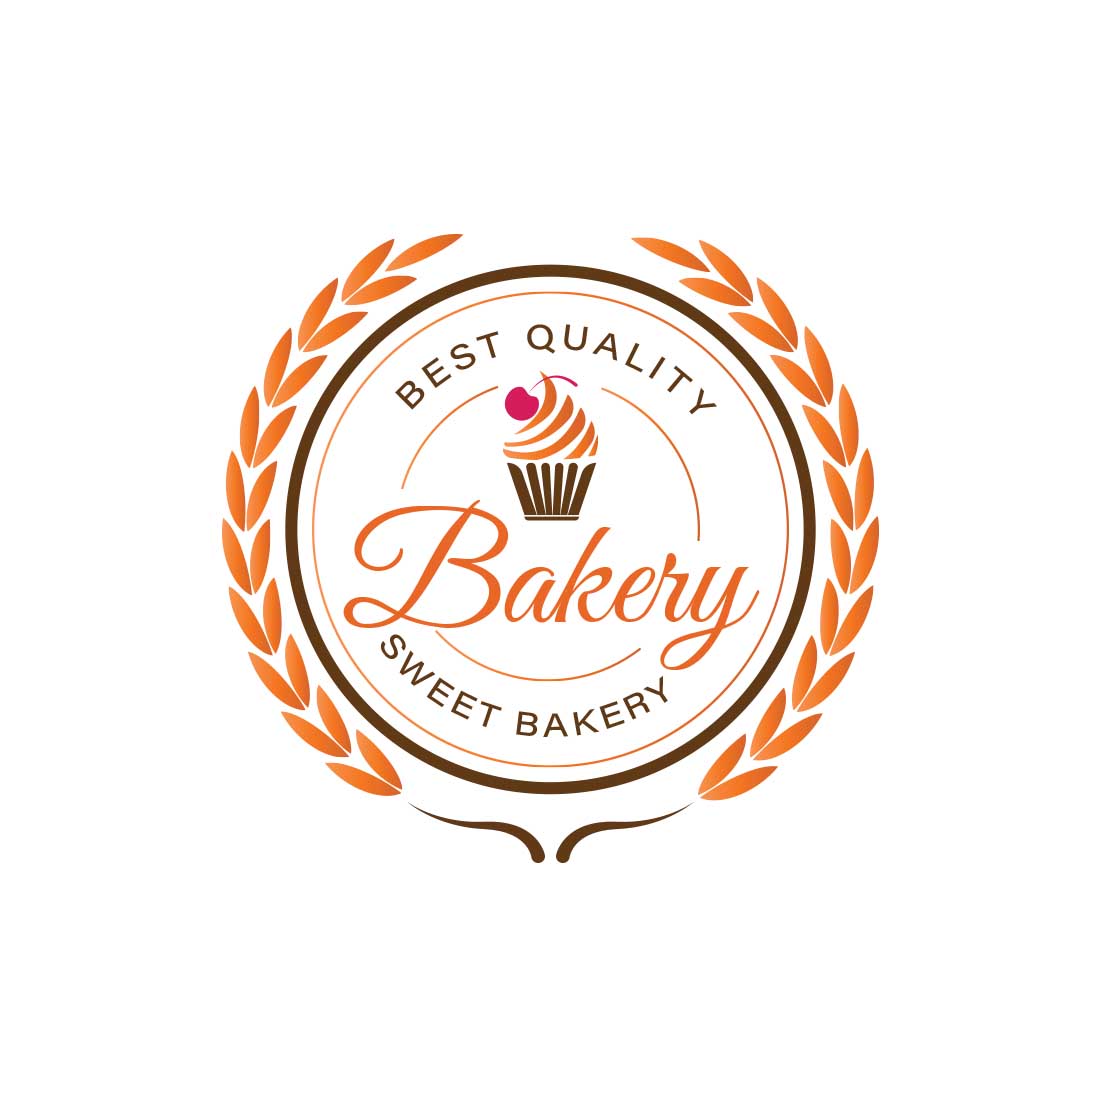 Preview bakery logo design.